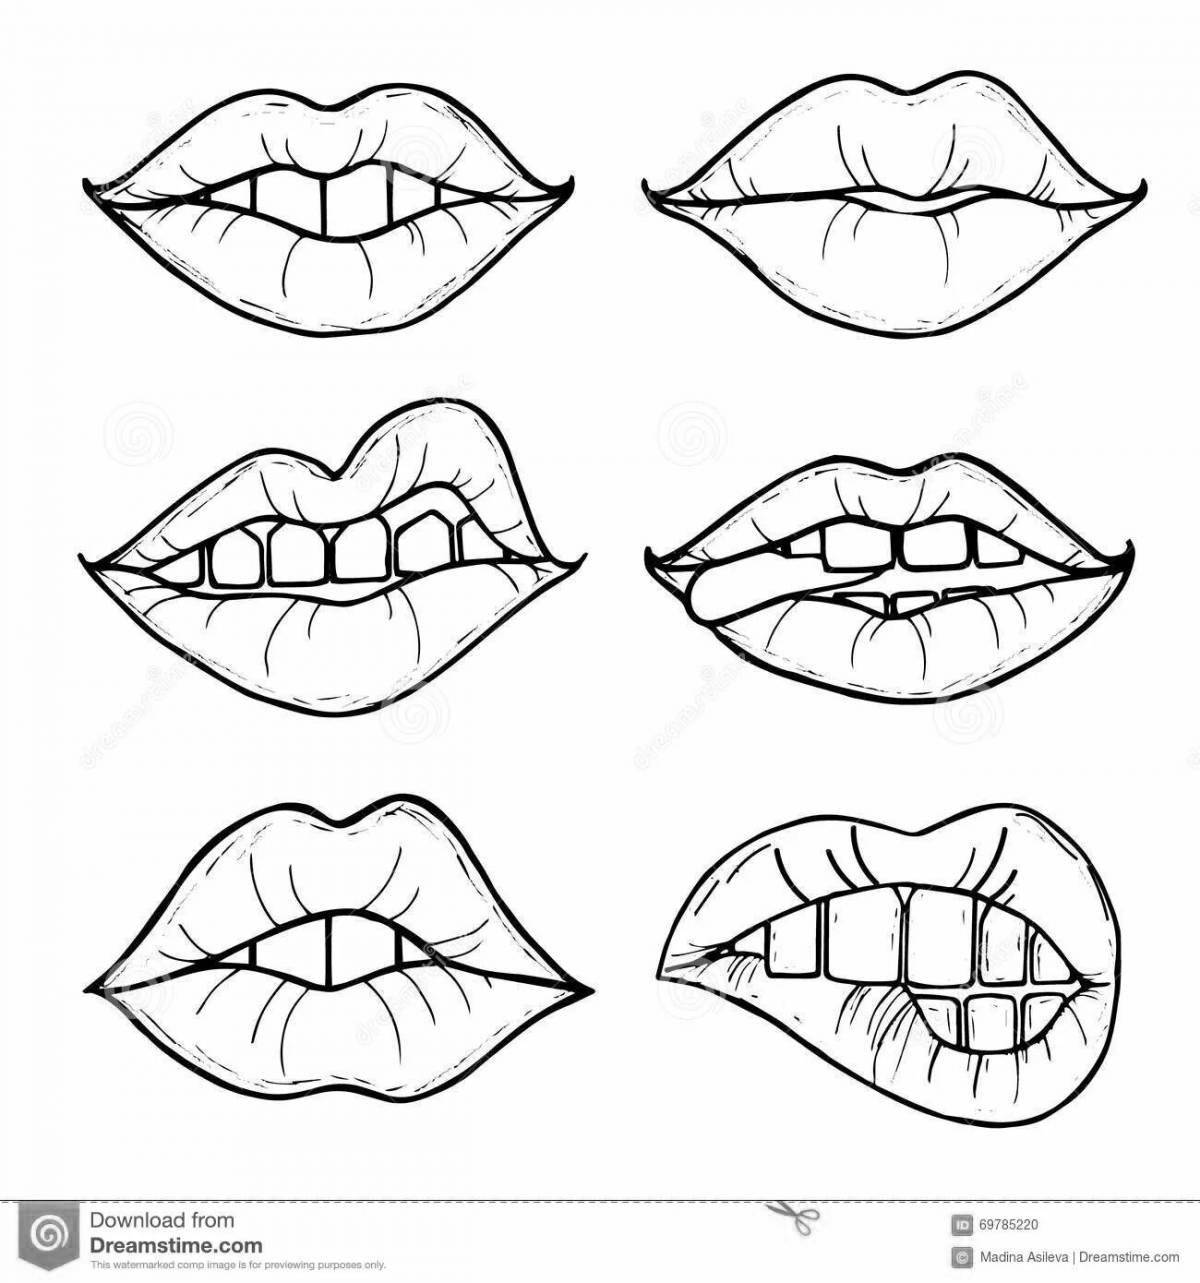 White lips #10